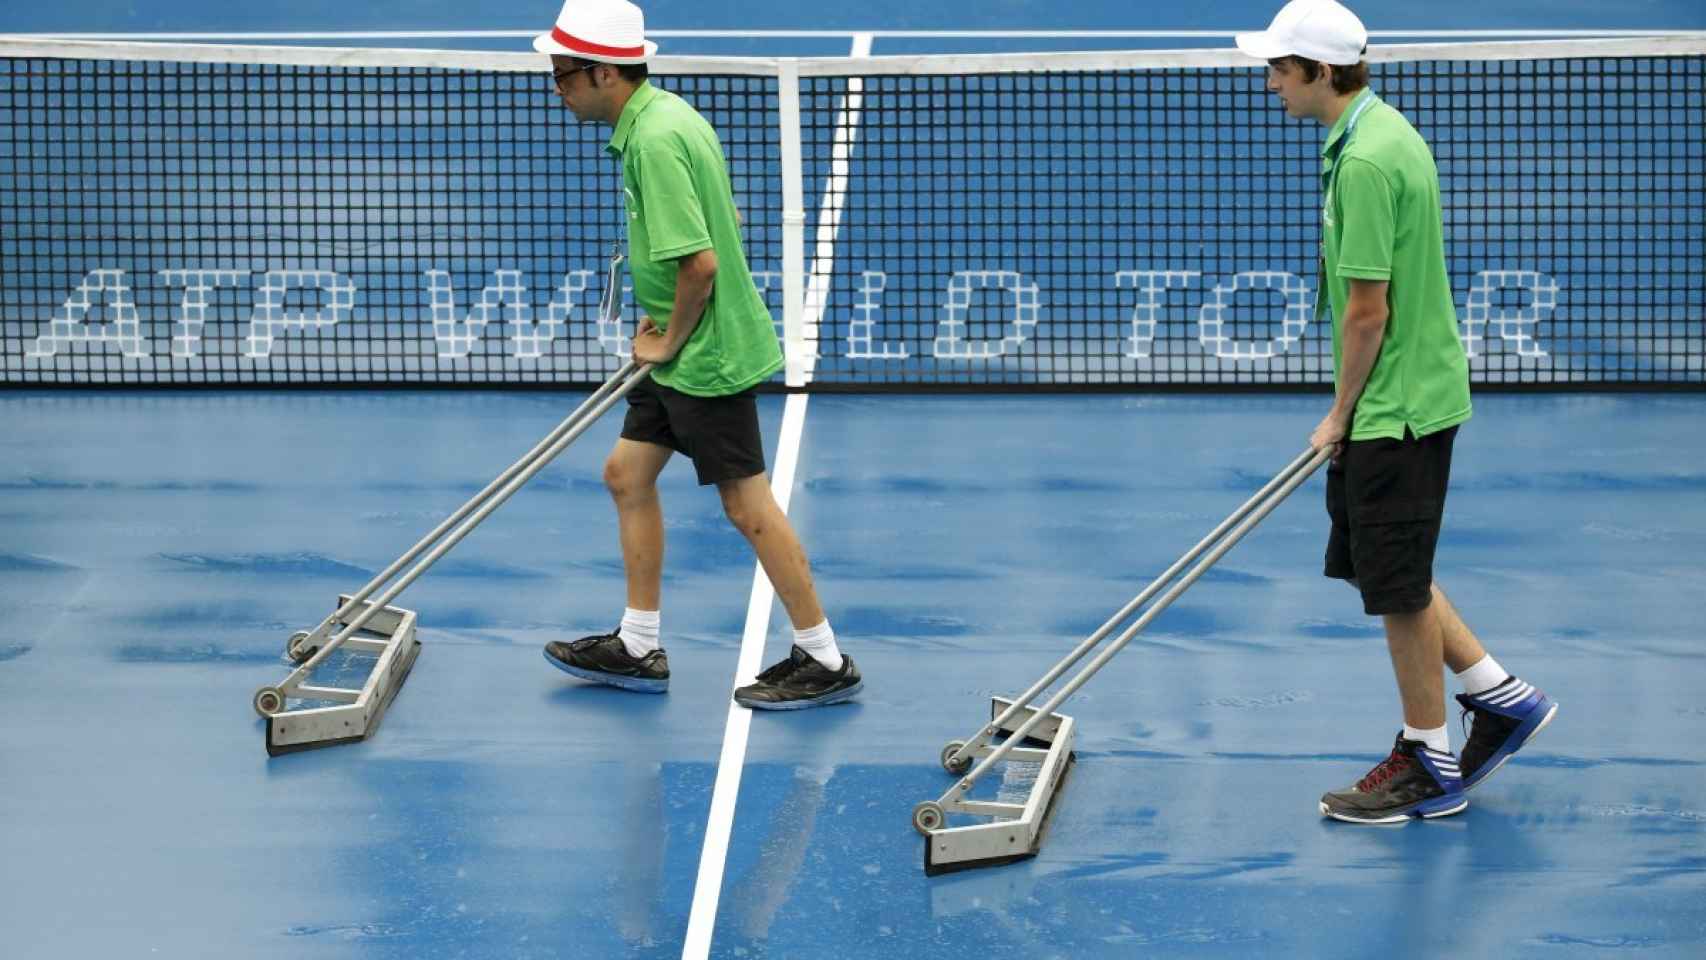 Unos empleados achican agua en una pista, en el torneo de tenis de Sidney